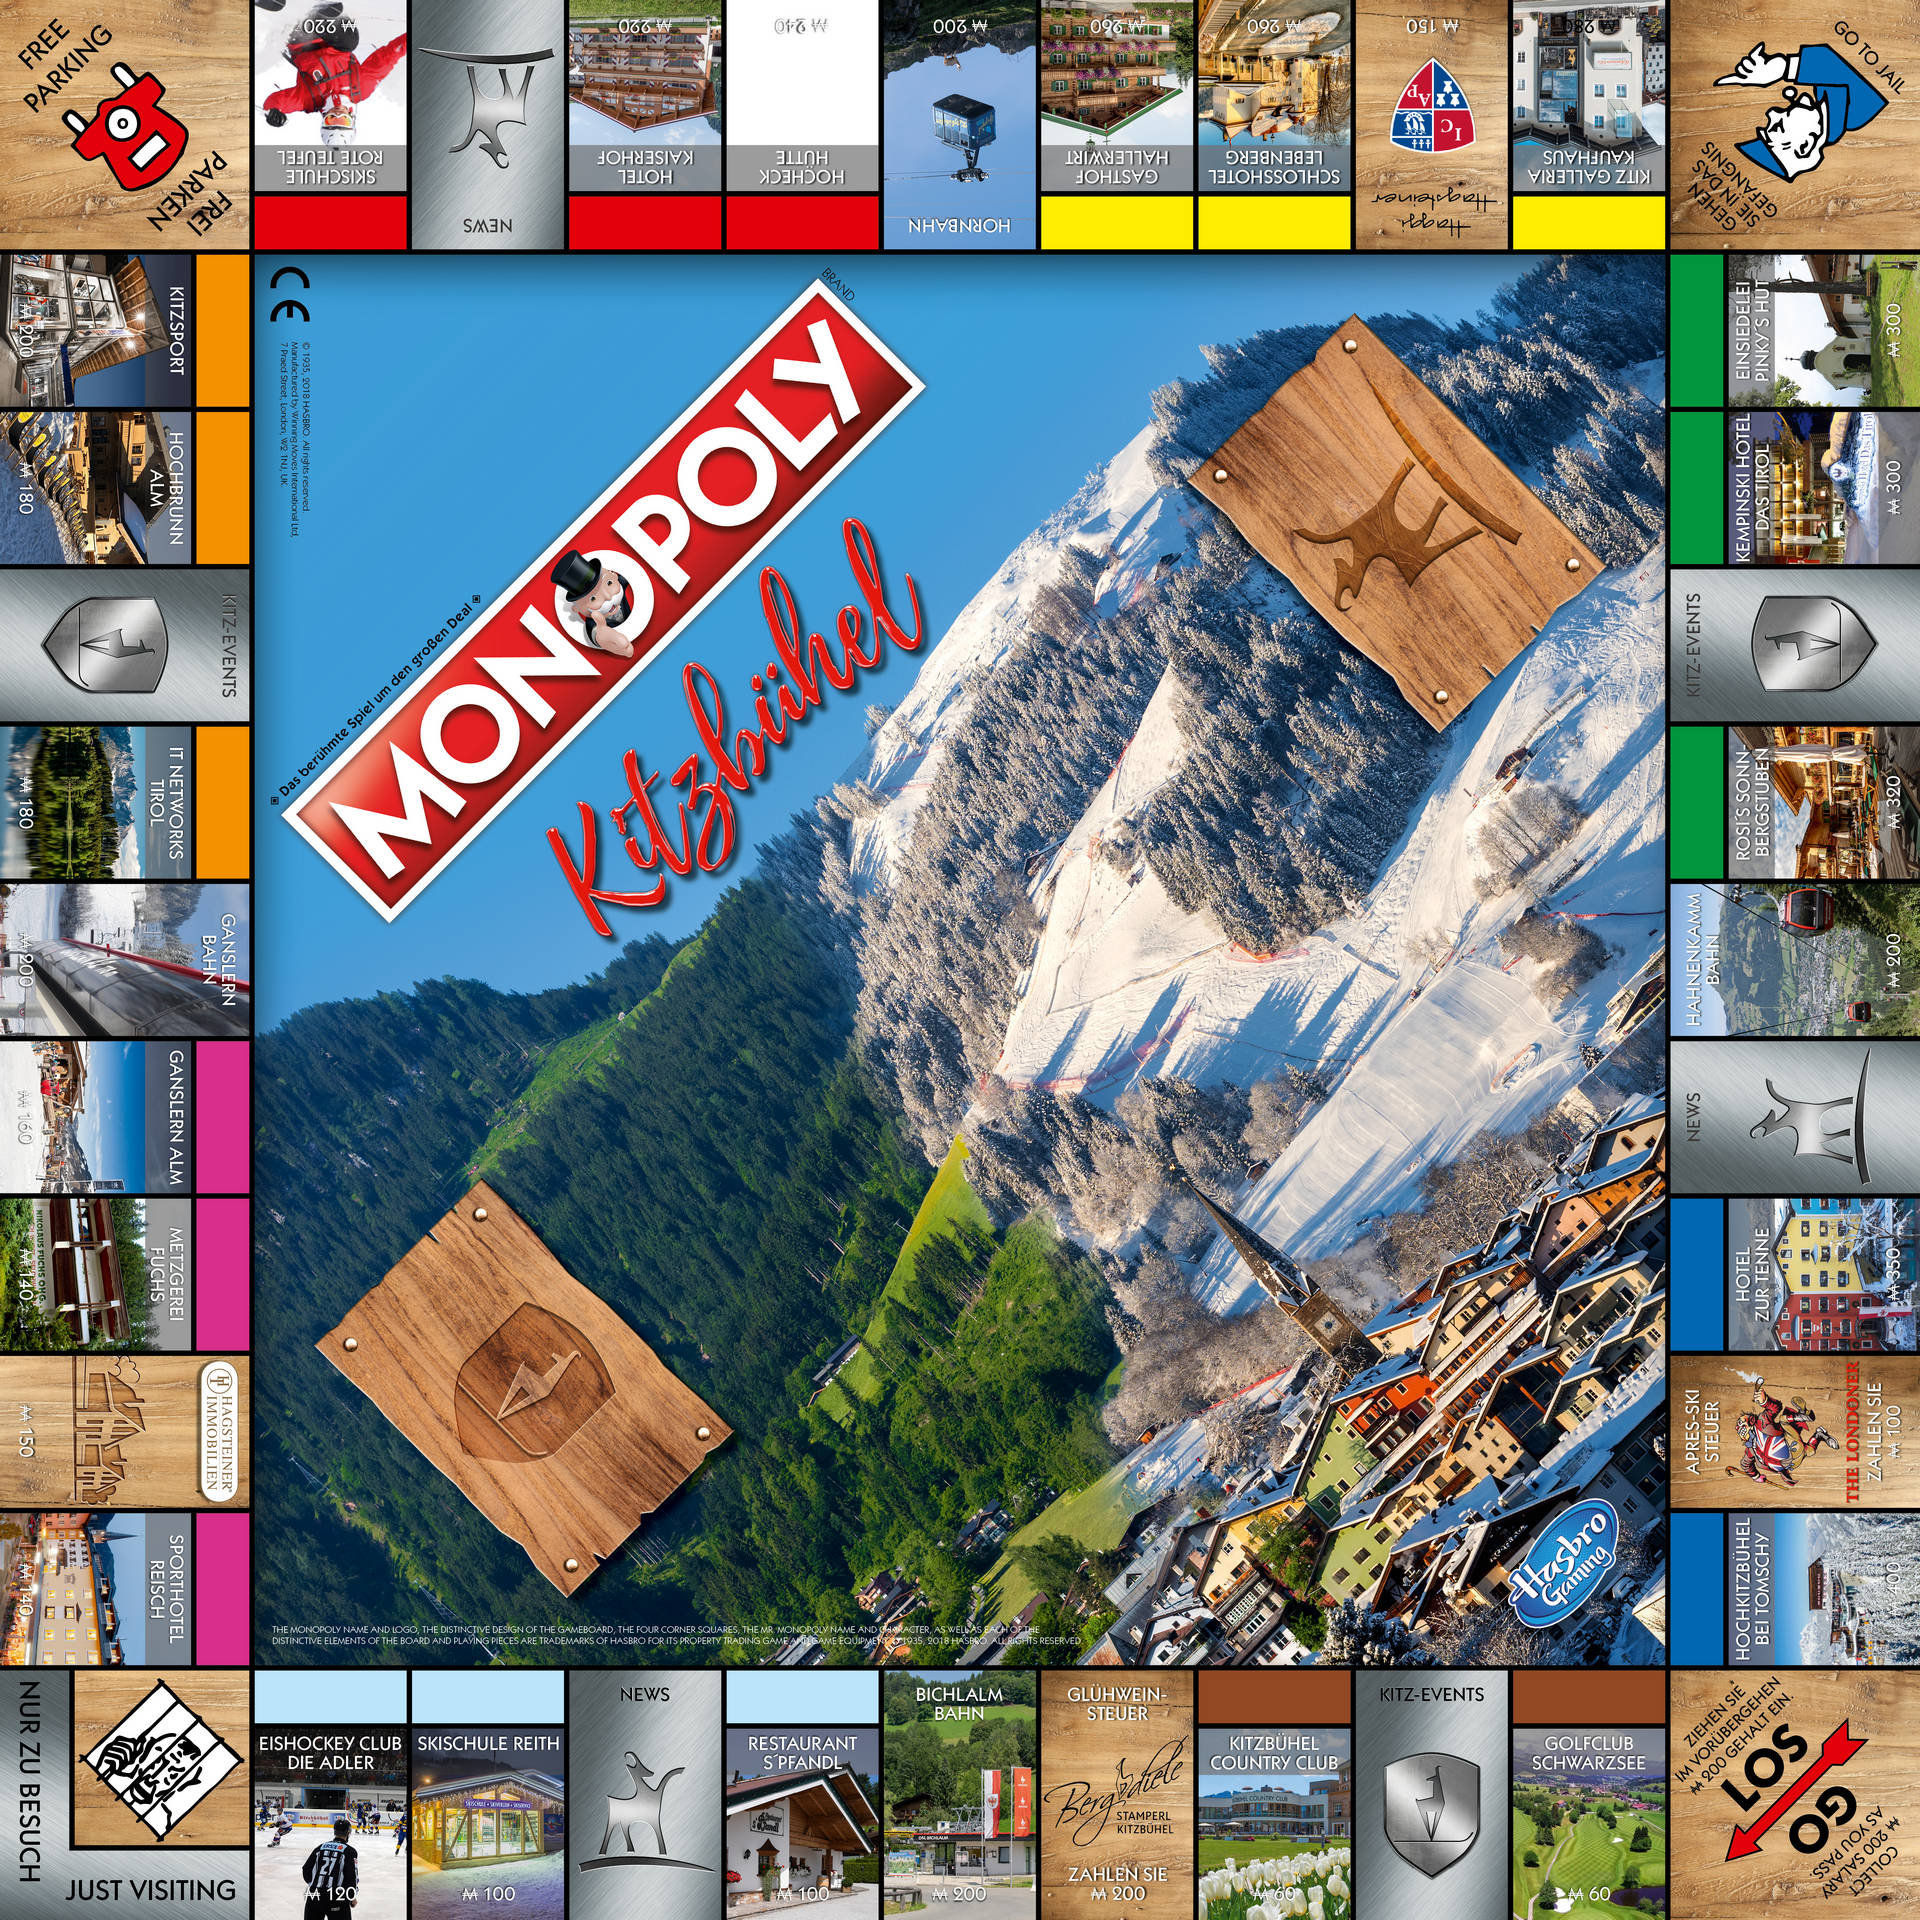 Monopoly Kitzbühel